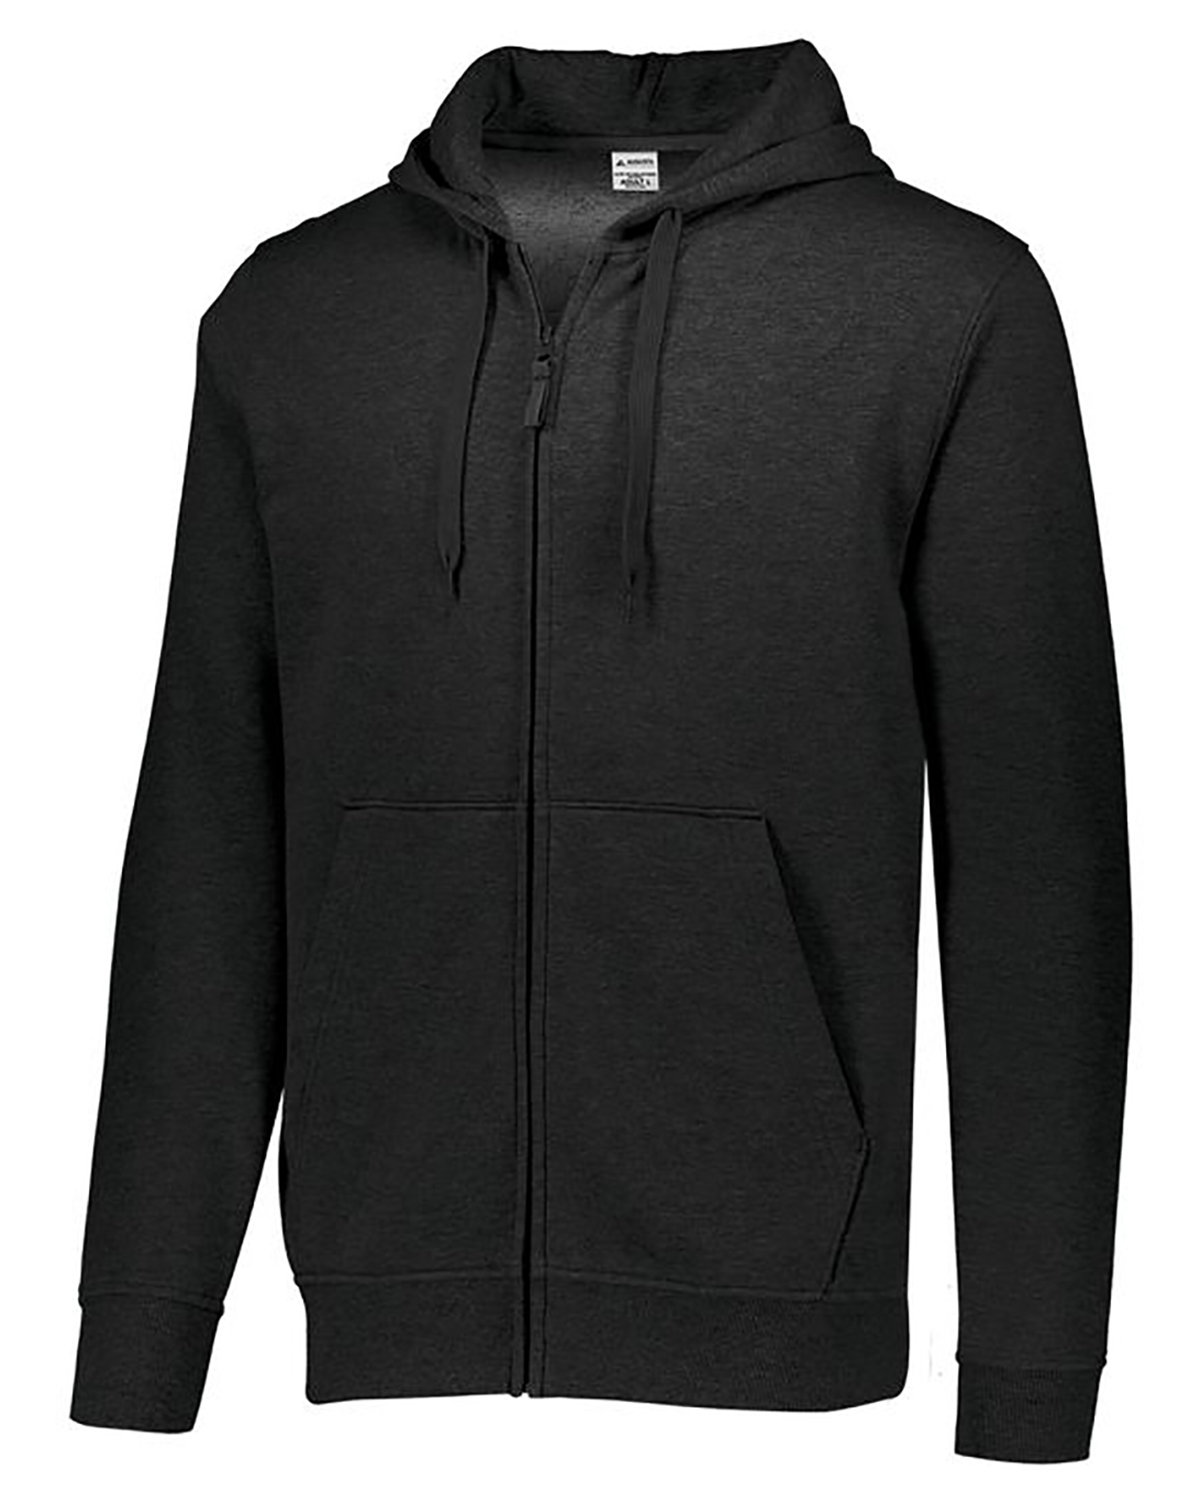 Adult Fleece Full-Zip Hooded Sweatshirt-